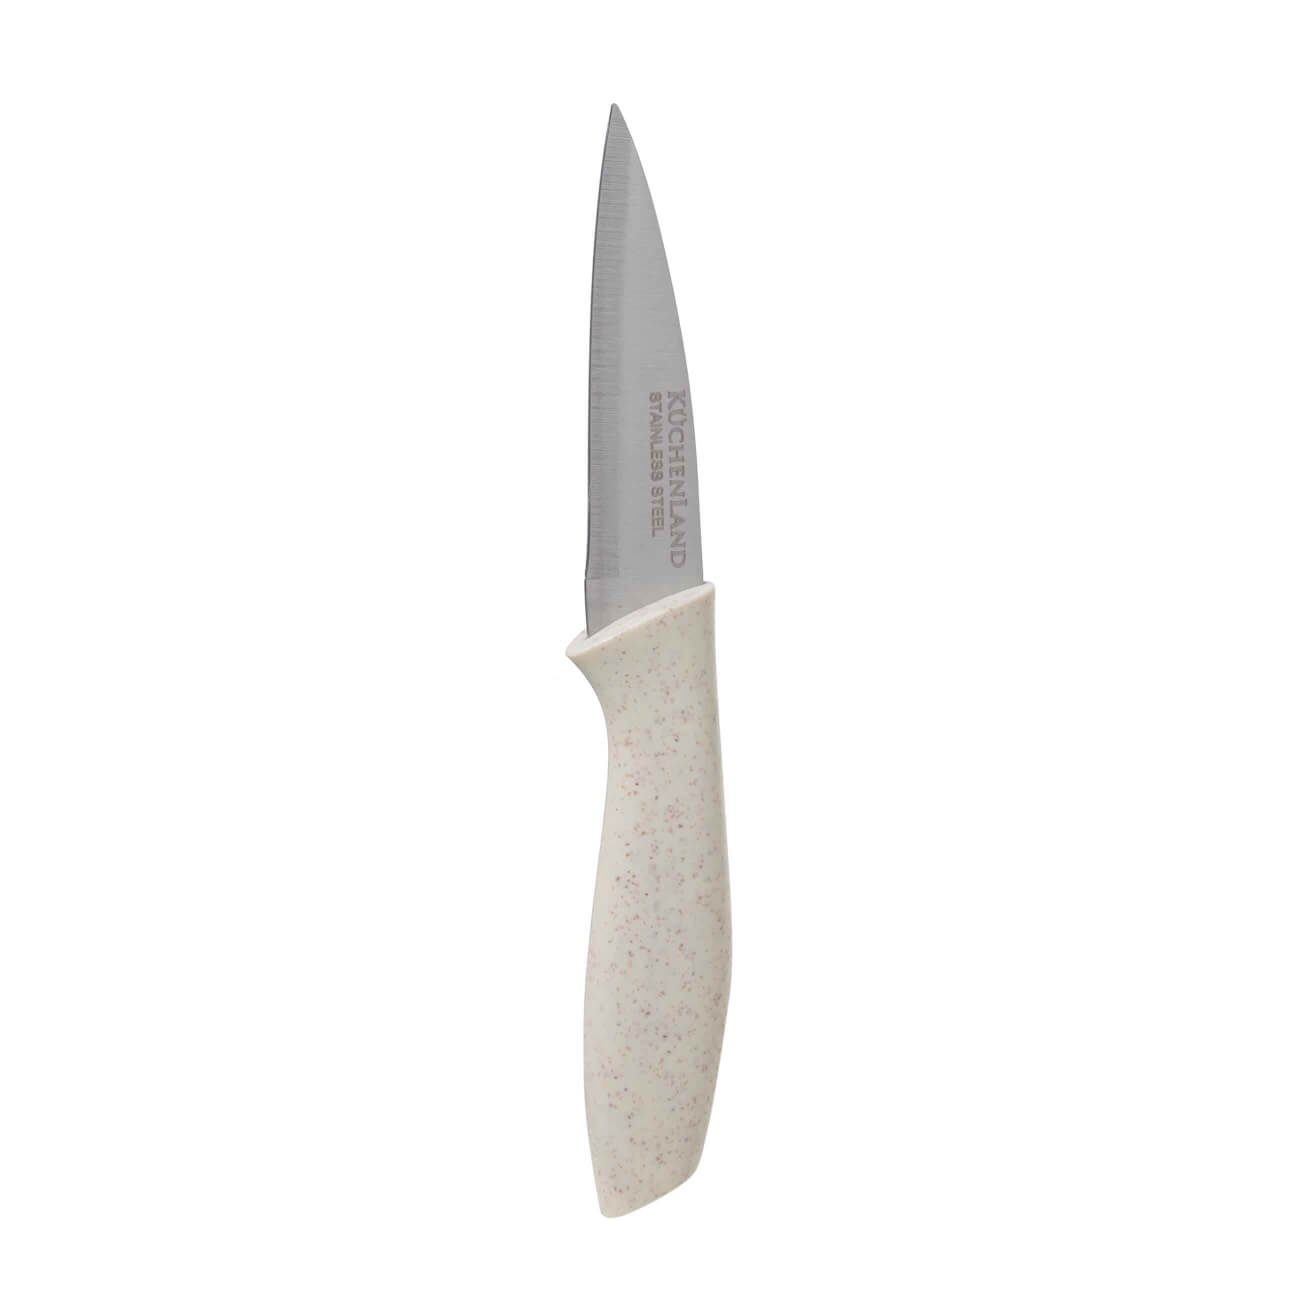 Нож для чистки овощей, 9 см, сталь/пластик, молочный, Speck-light нож для овощей mallony